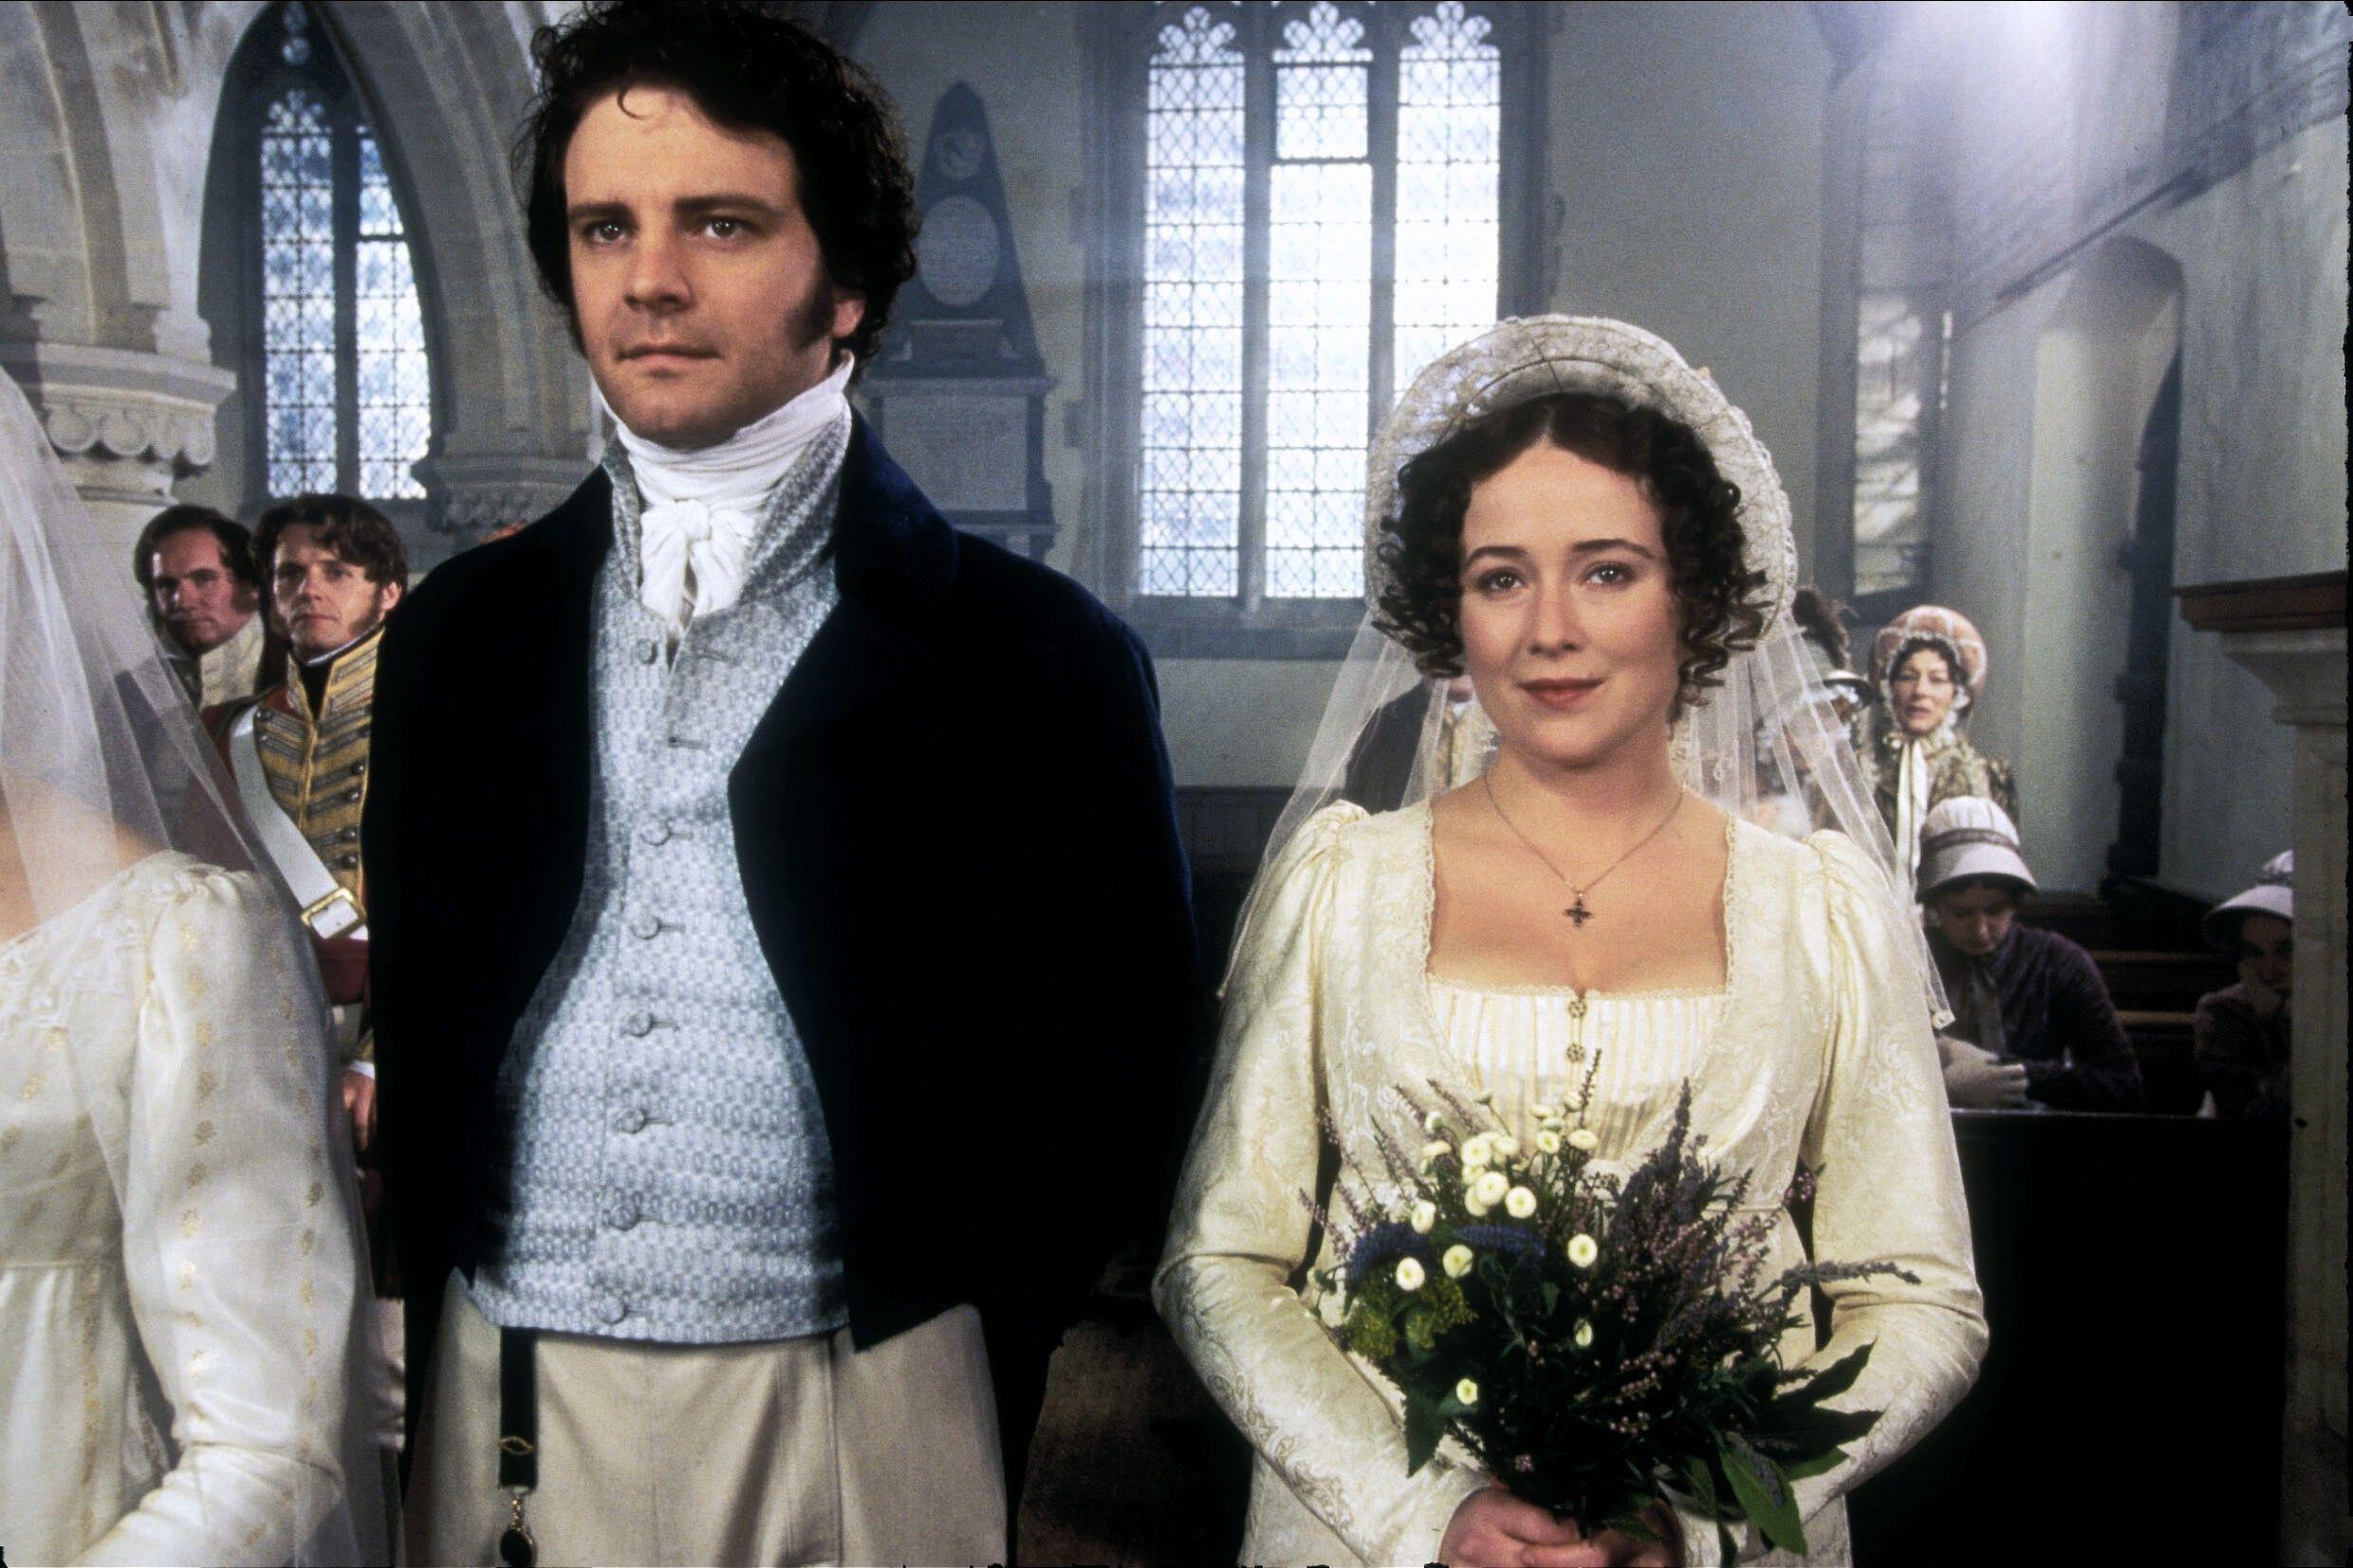 Der Tag im Stil von „Stolz und Vorurteil“ nahm Gestalt an und der Bräutigam nahm voll und ganz die Rolle an, die Colin Firth in der Fernsehserie von 1995 spielte